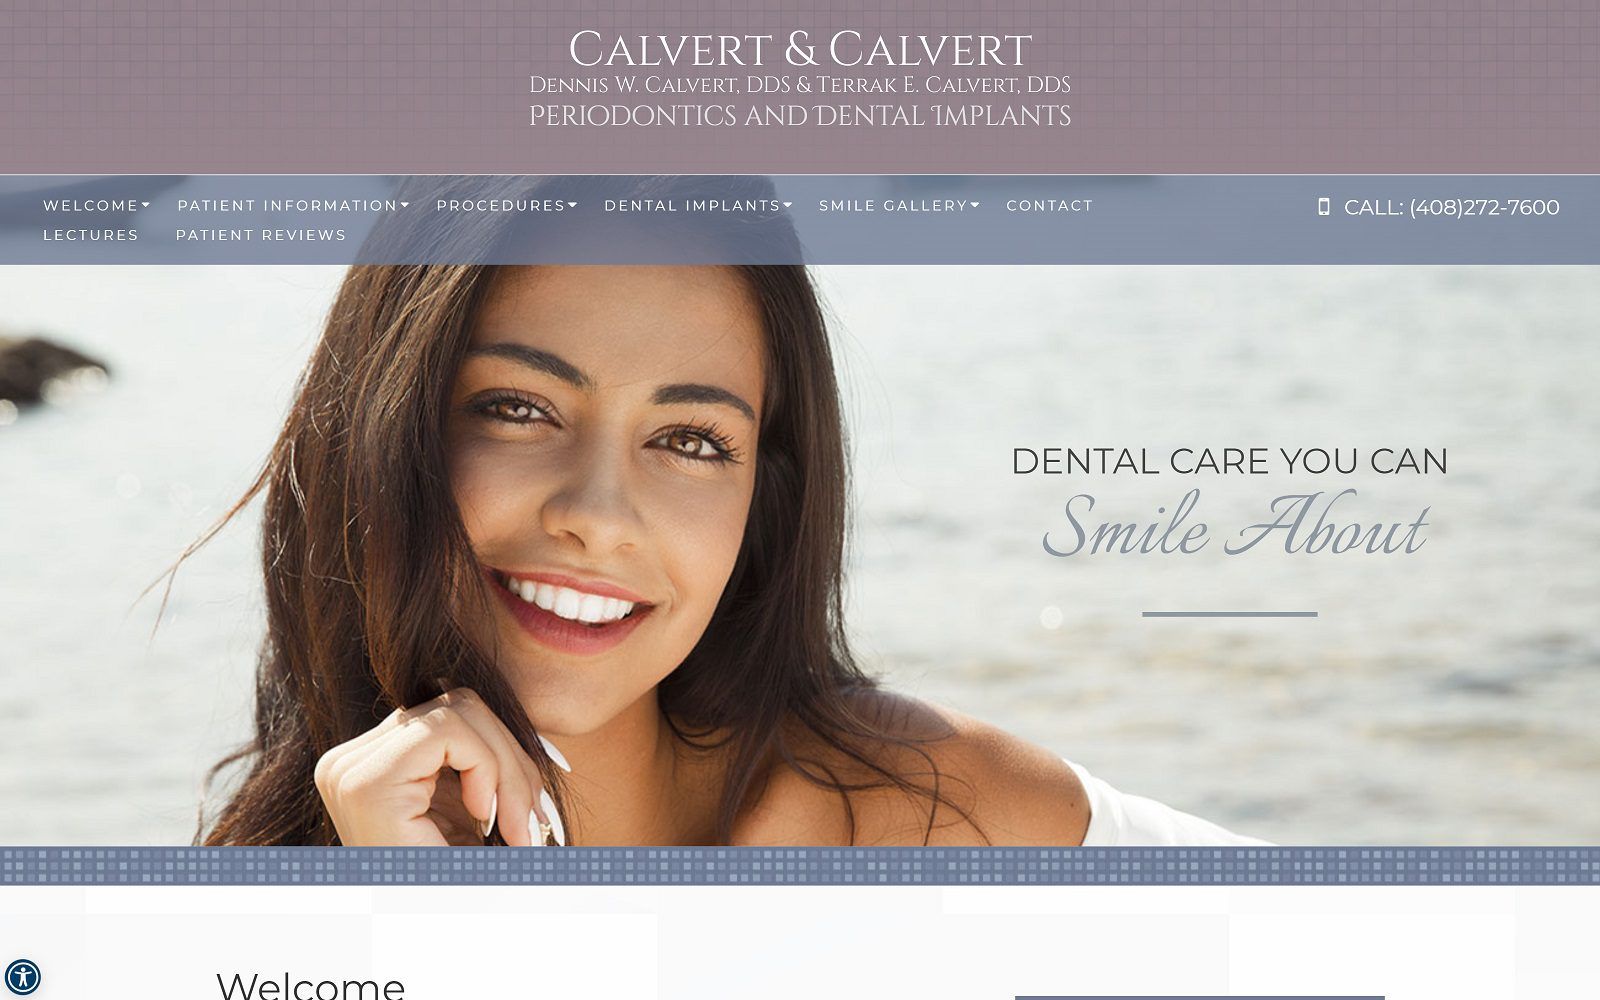 The screenshot of dennis w. Calvert, dds website